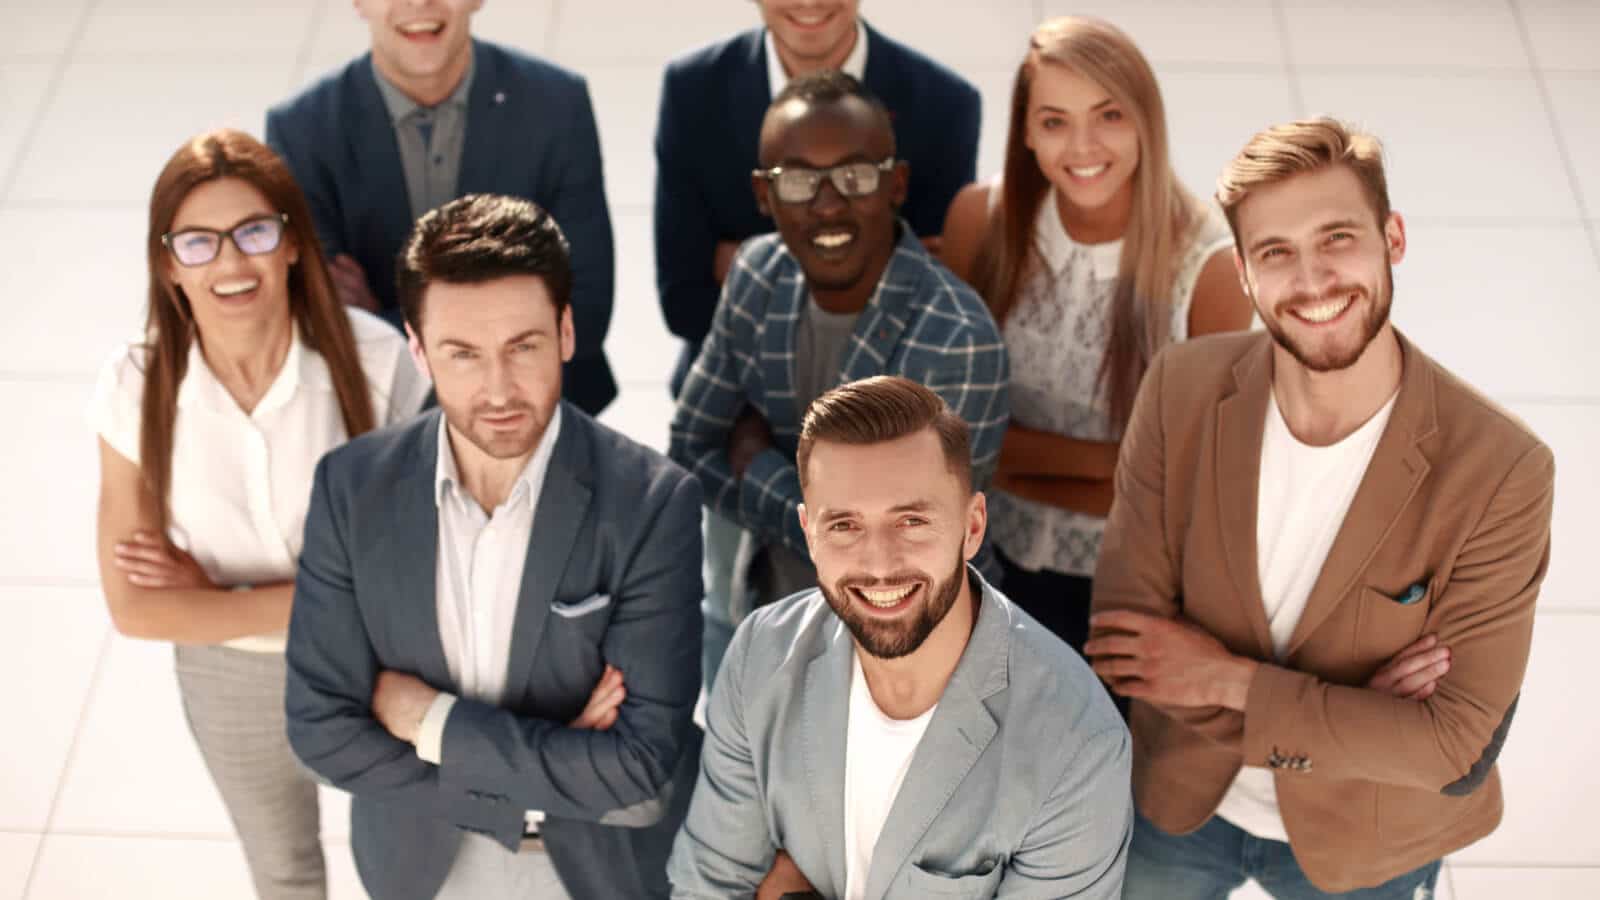 Ein Team, dass glücklich auf dem Gruppenfoto ist, da ihr Arbeitgeber Employer Branding betreibt